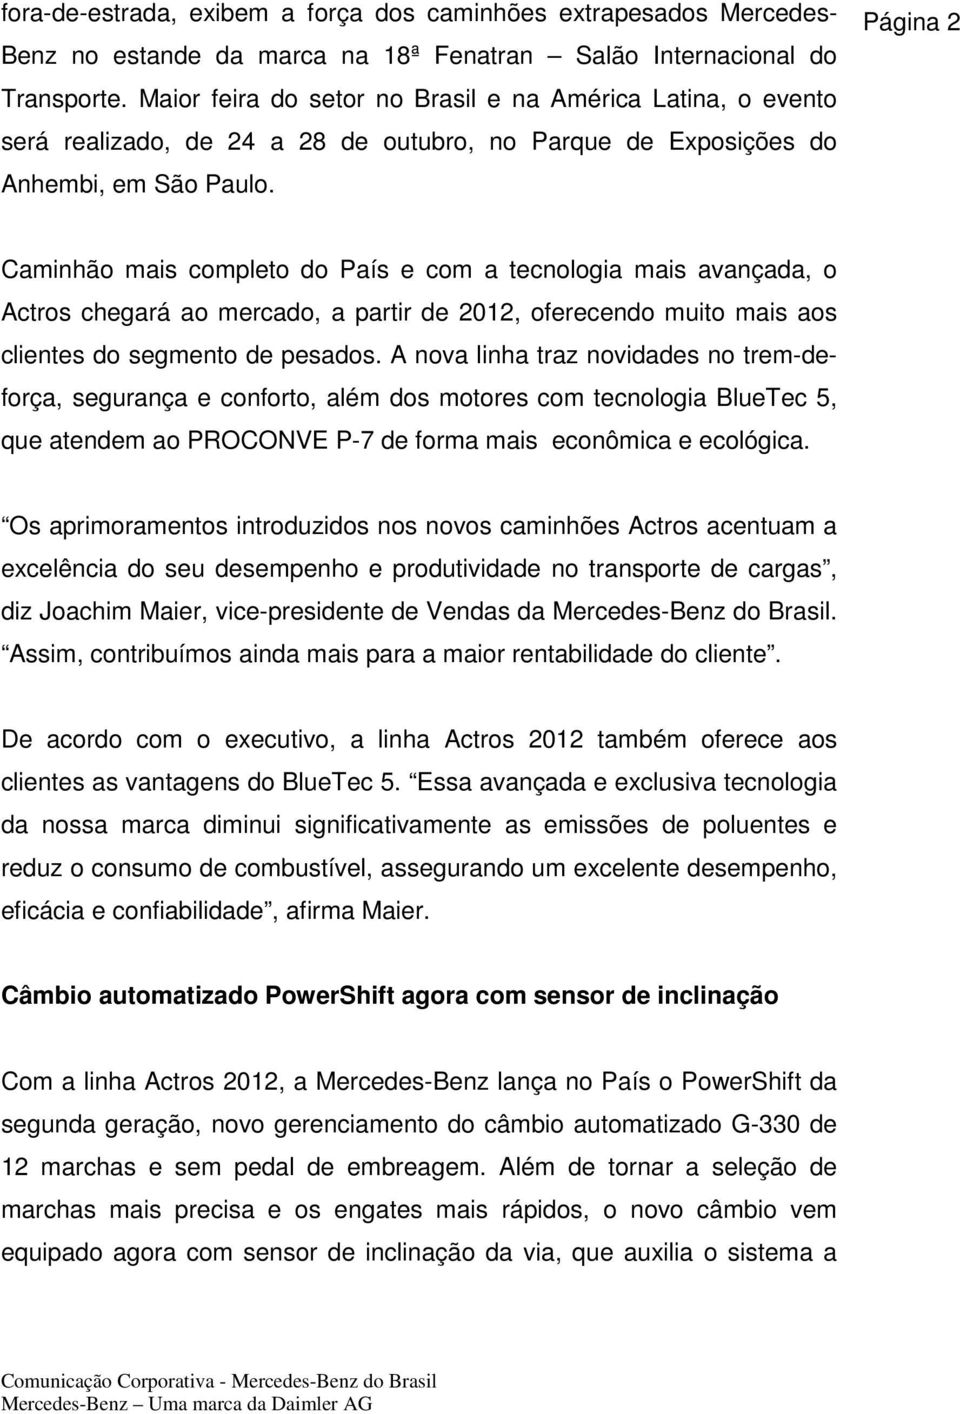 Página 2 Caminhão mais completo do País e com a tecnologia mais avançada, o Actros chegará ao mercado, a partir de 2012, oferecendo muito mais aos clientes do segmento de pesados.